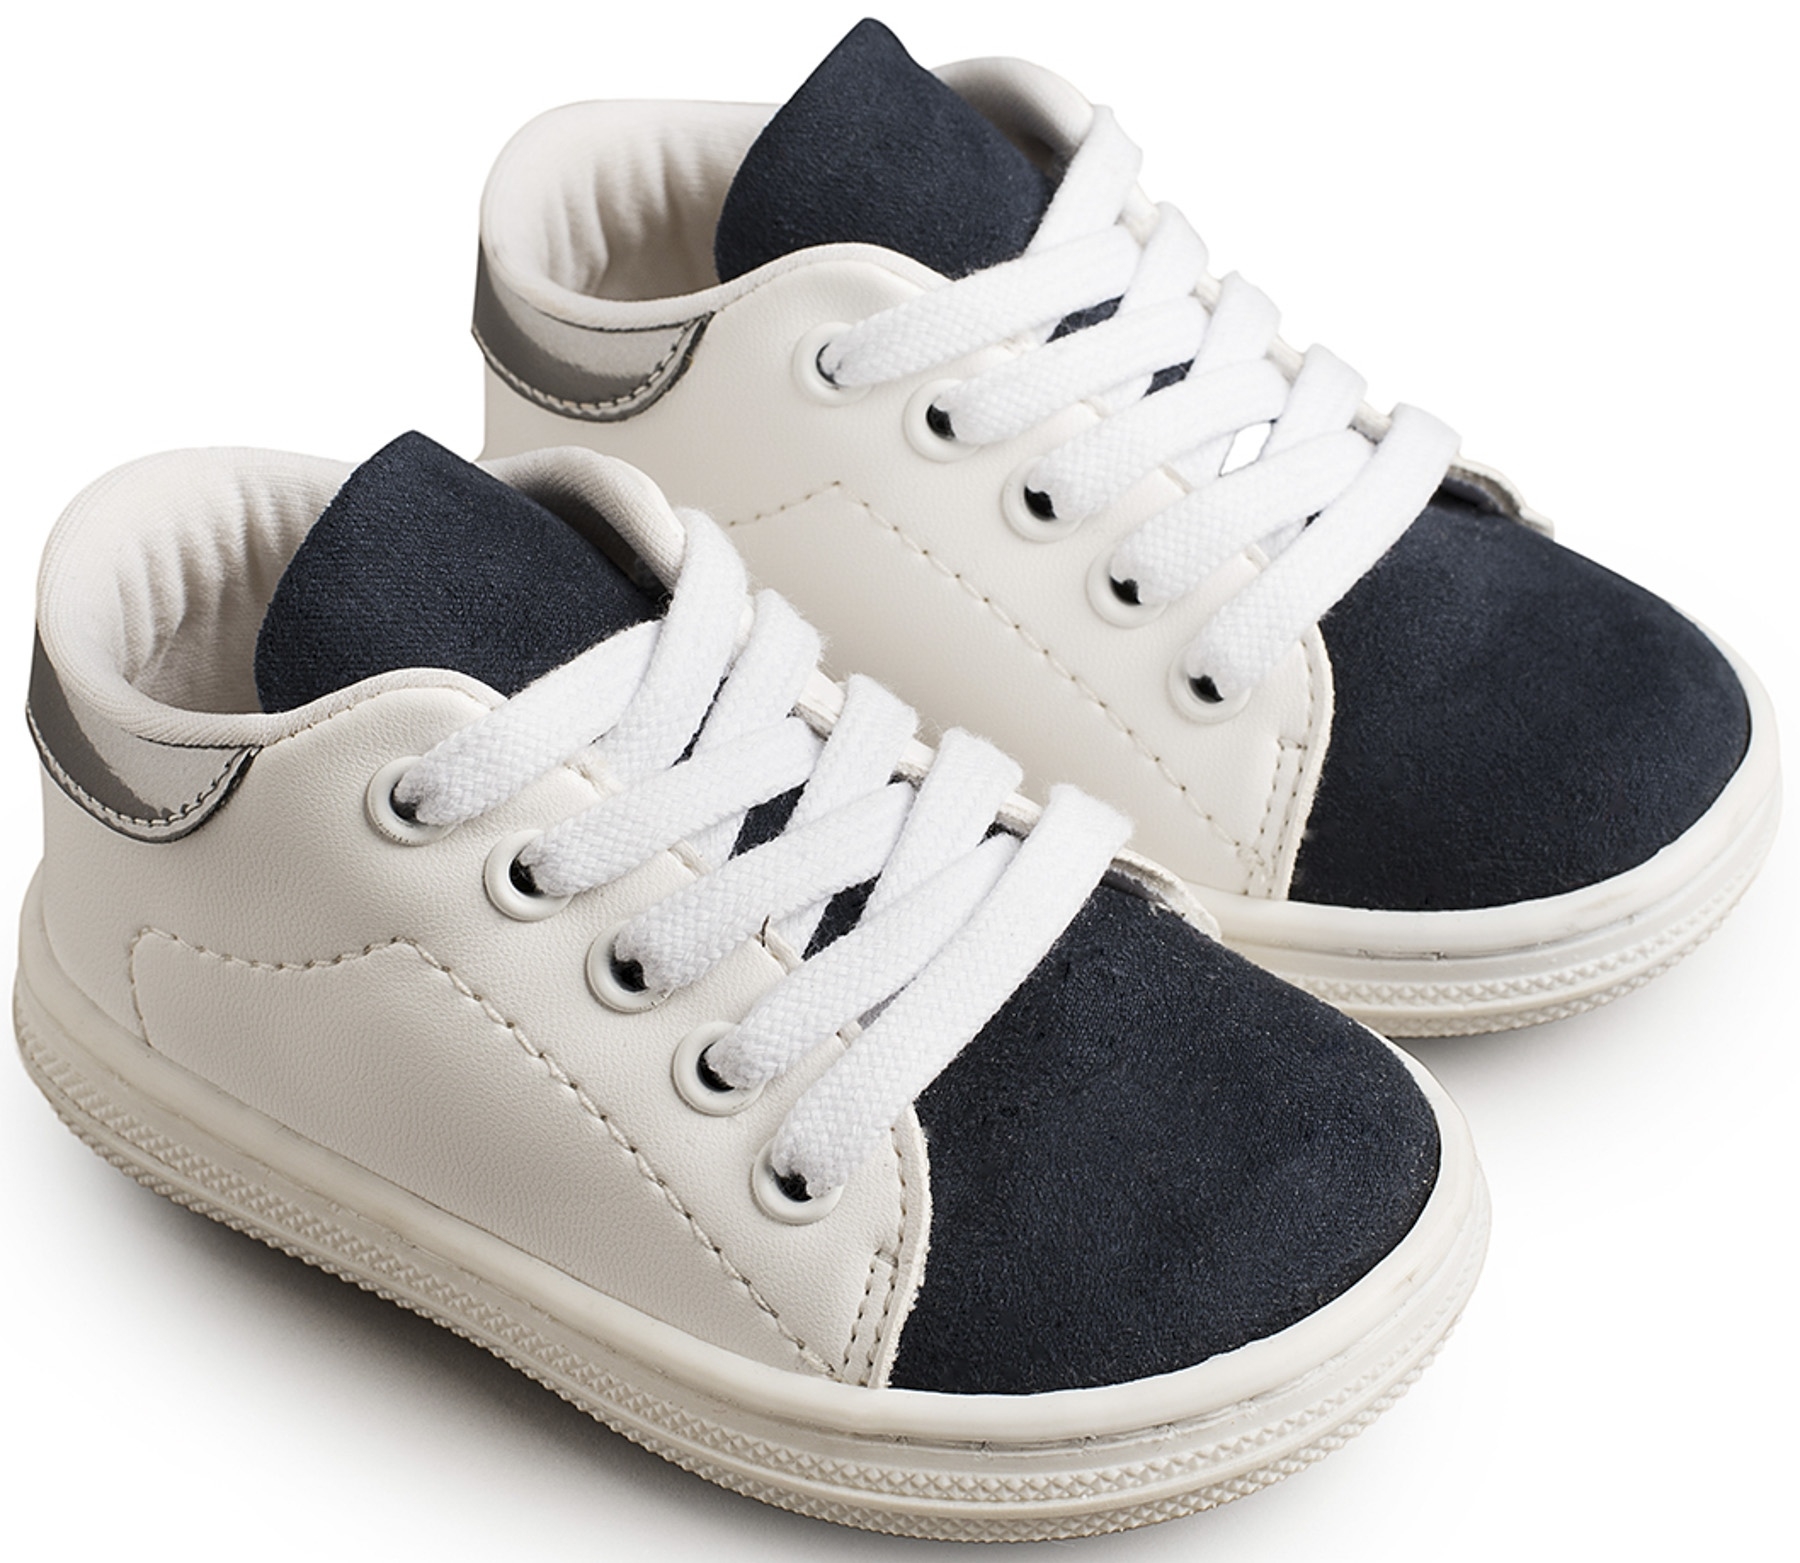 3037 babywalker άσπρο μπλε με κορδόνια βαπτιστικό παπούτσι περπατήματος : 1